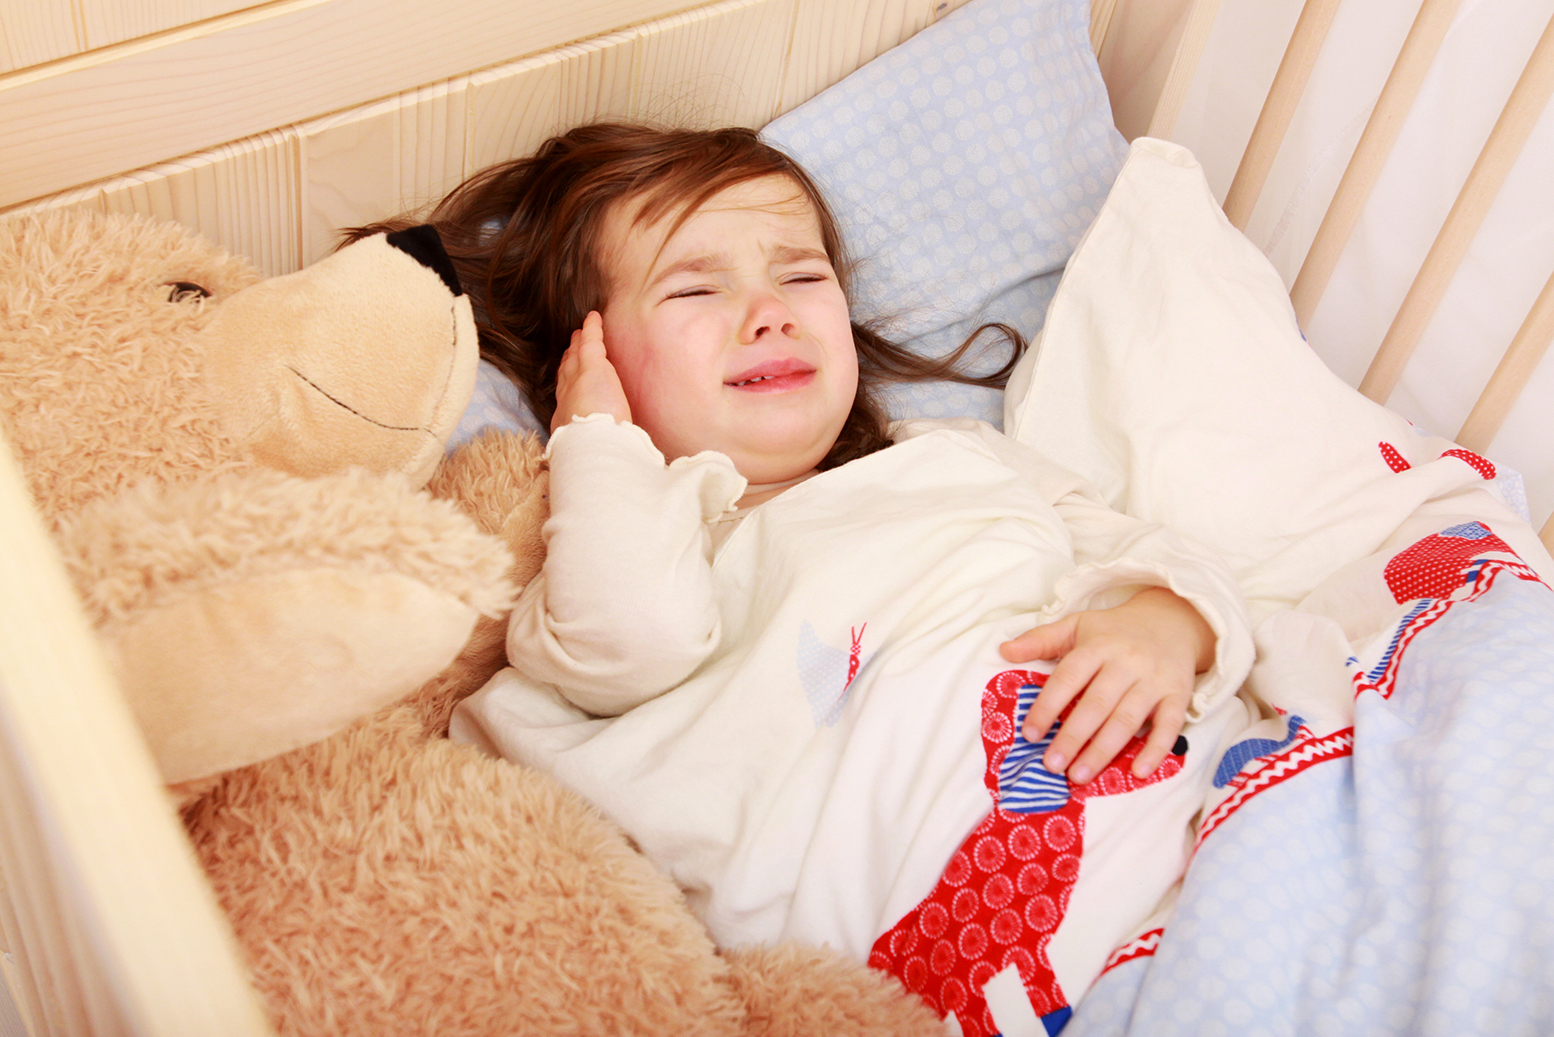 Mädchen liegt in einem Kinderbett und hält sich die Ohren, da sie Ohrenschmerzen hat.